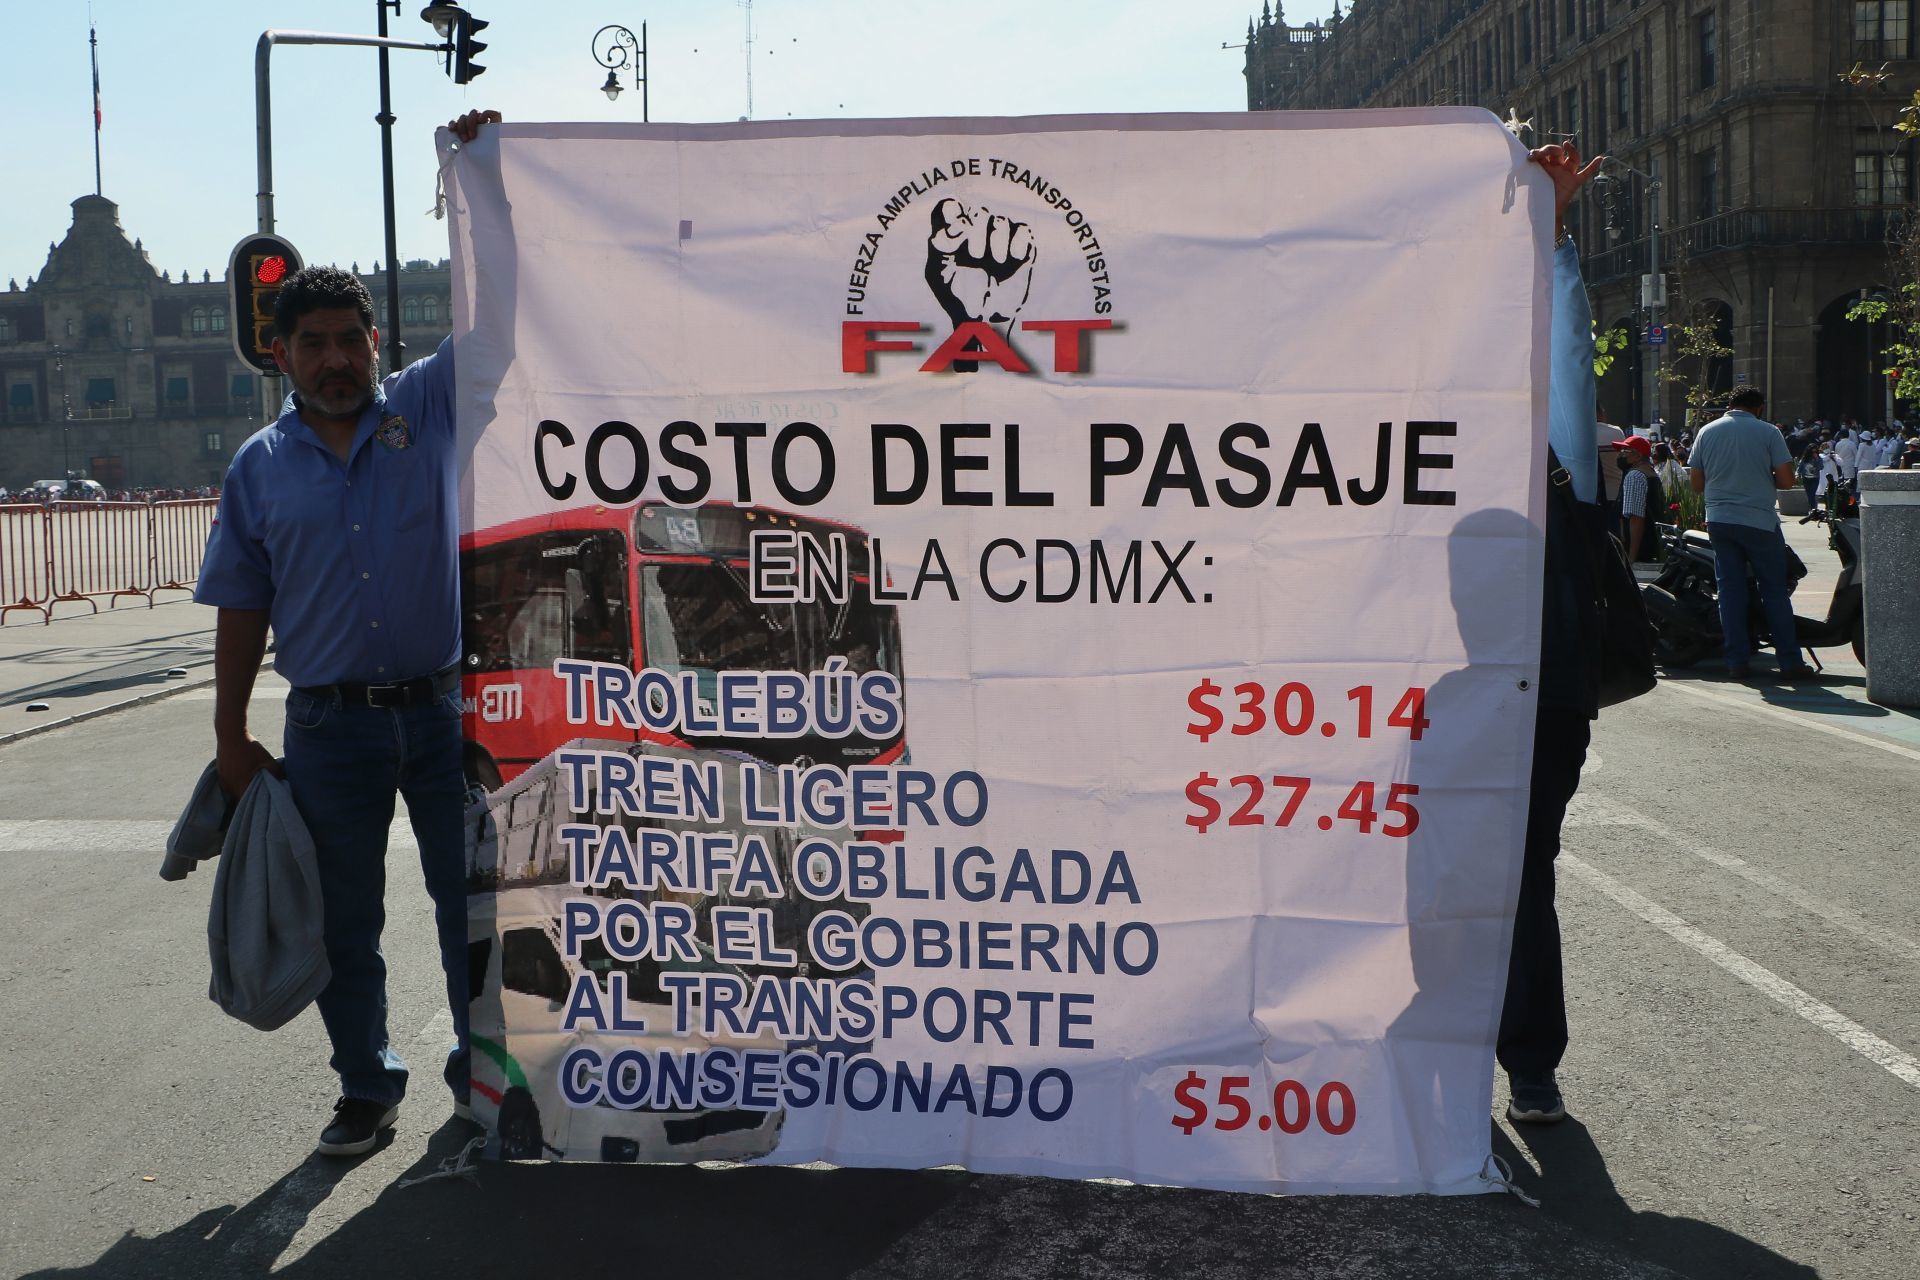 Transportistas exigen aumento de 3 pesos en CDMX; alistan cierres